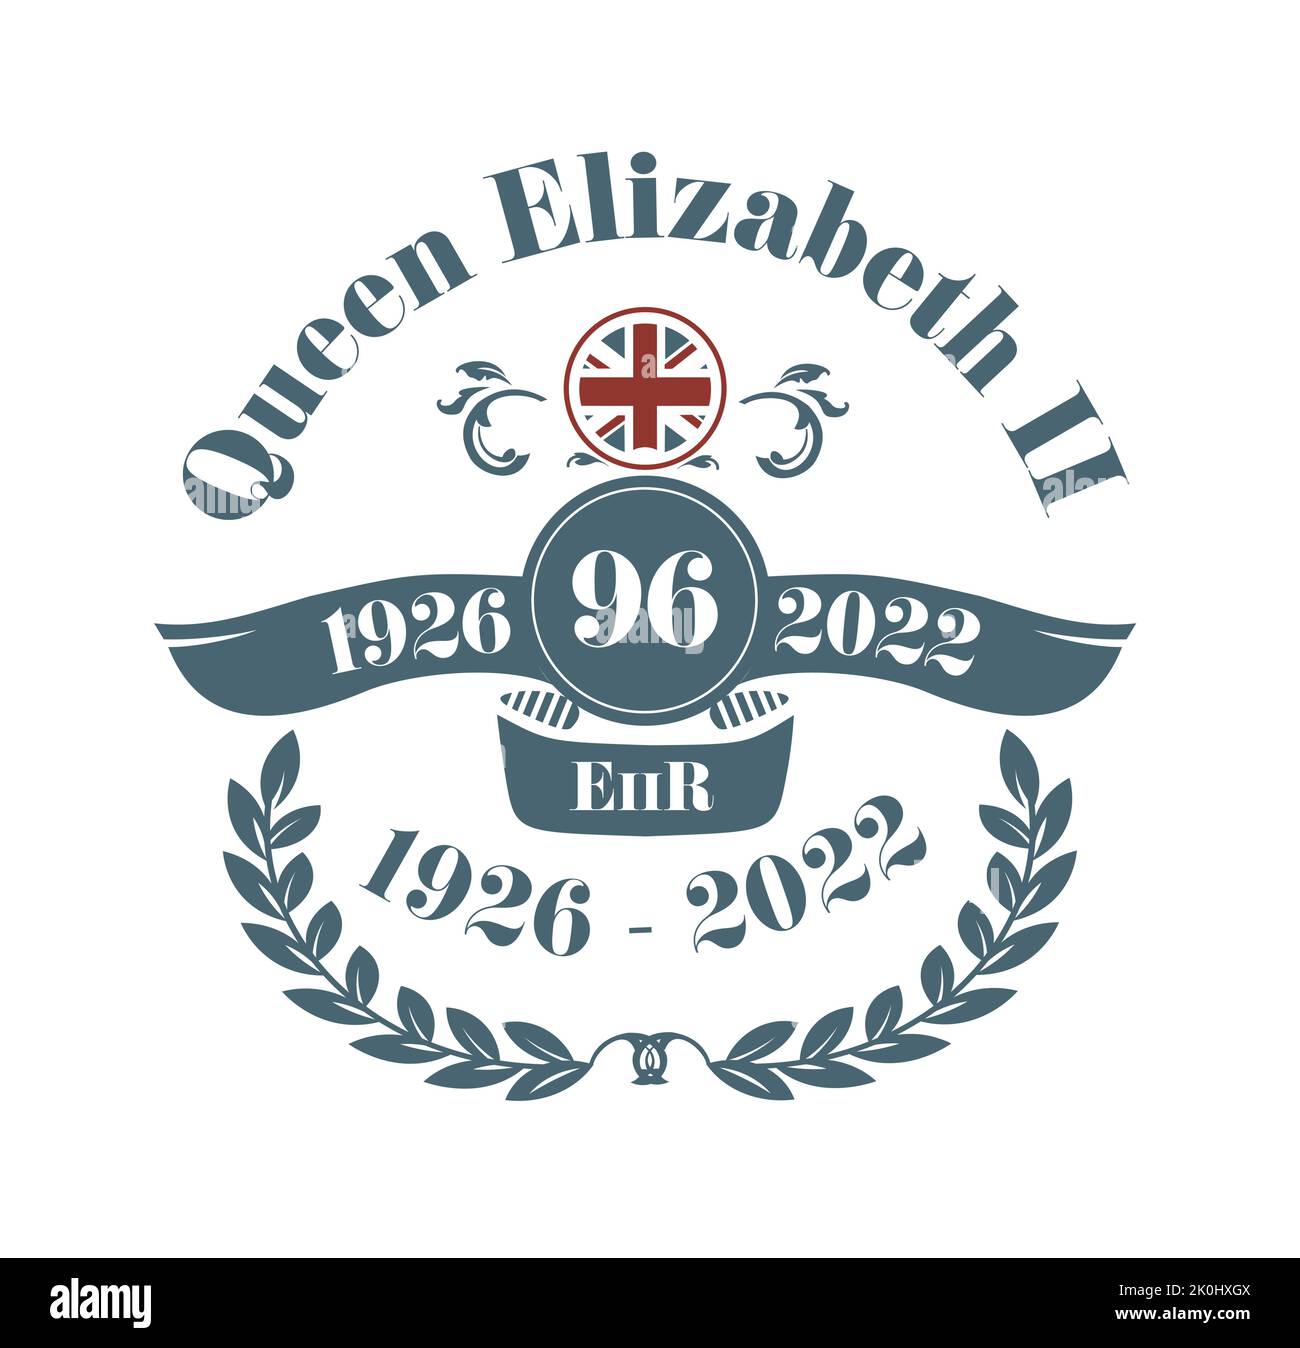 2022 Queen Elizabeth stirbt - 1926 - 2022 Rest in Peace Vektorgrafik. Stock Vektor